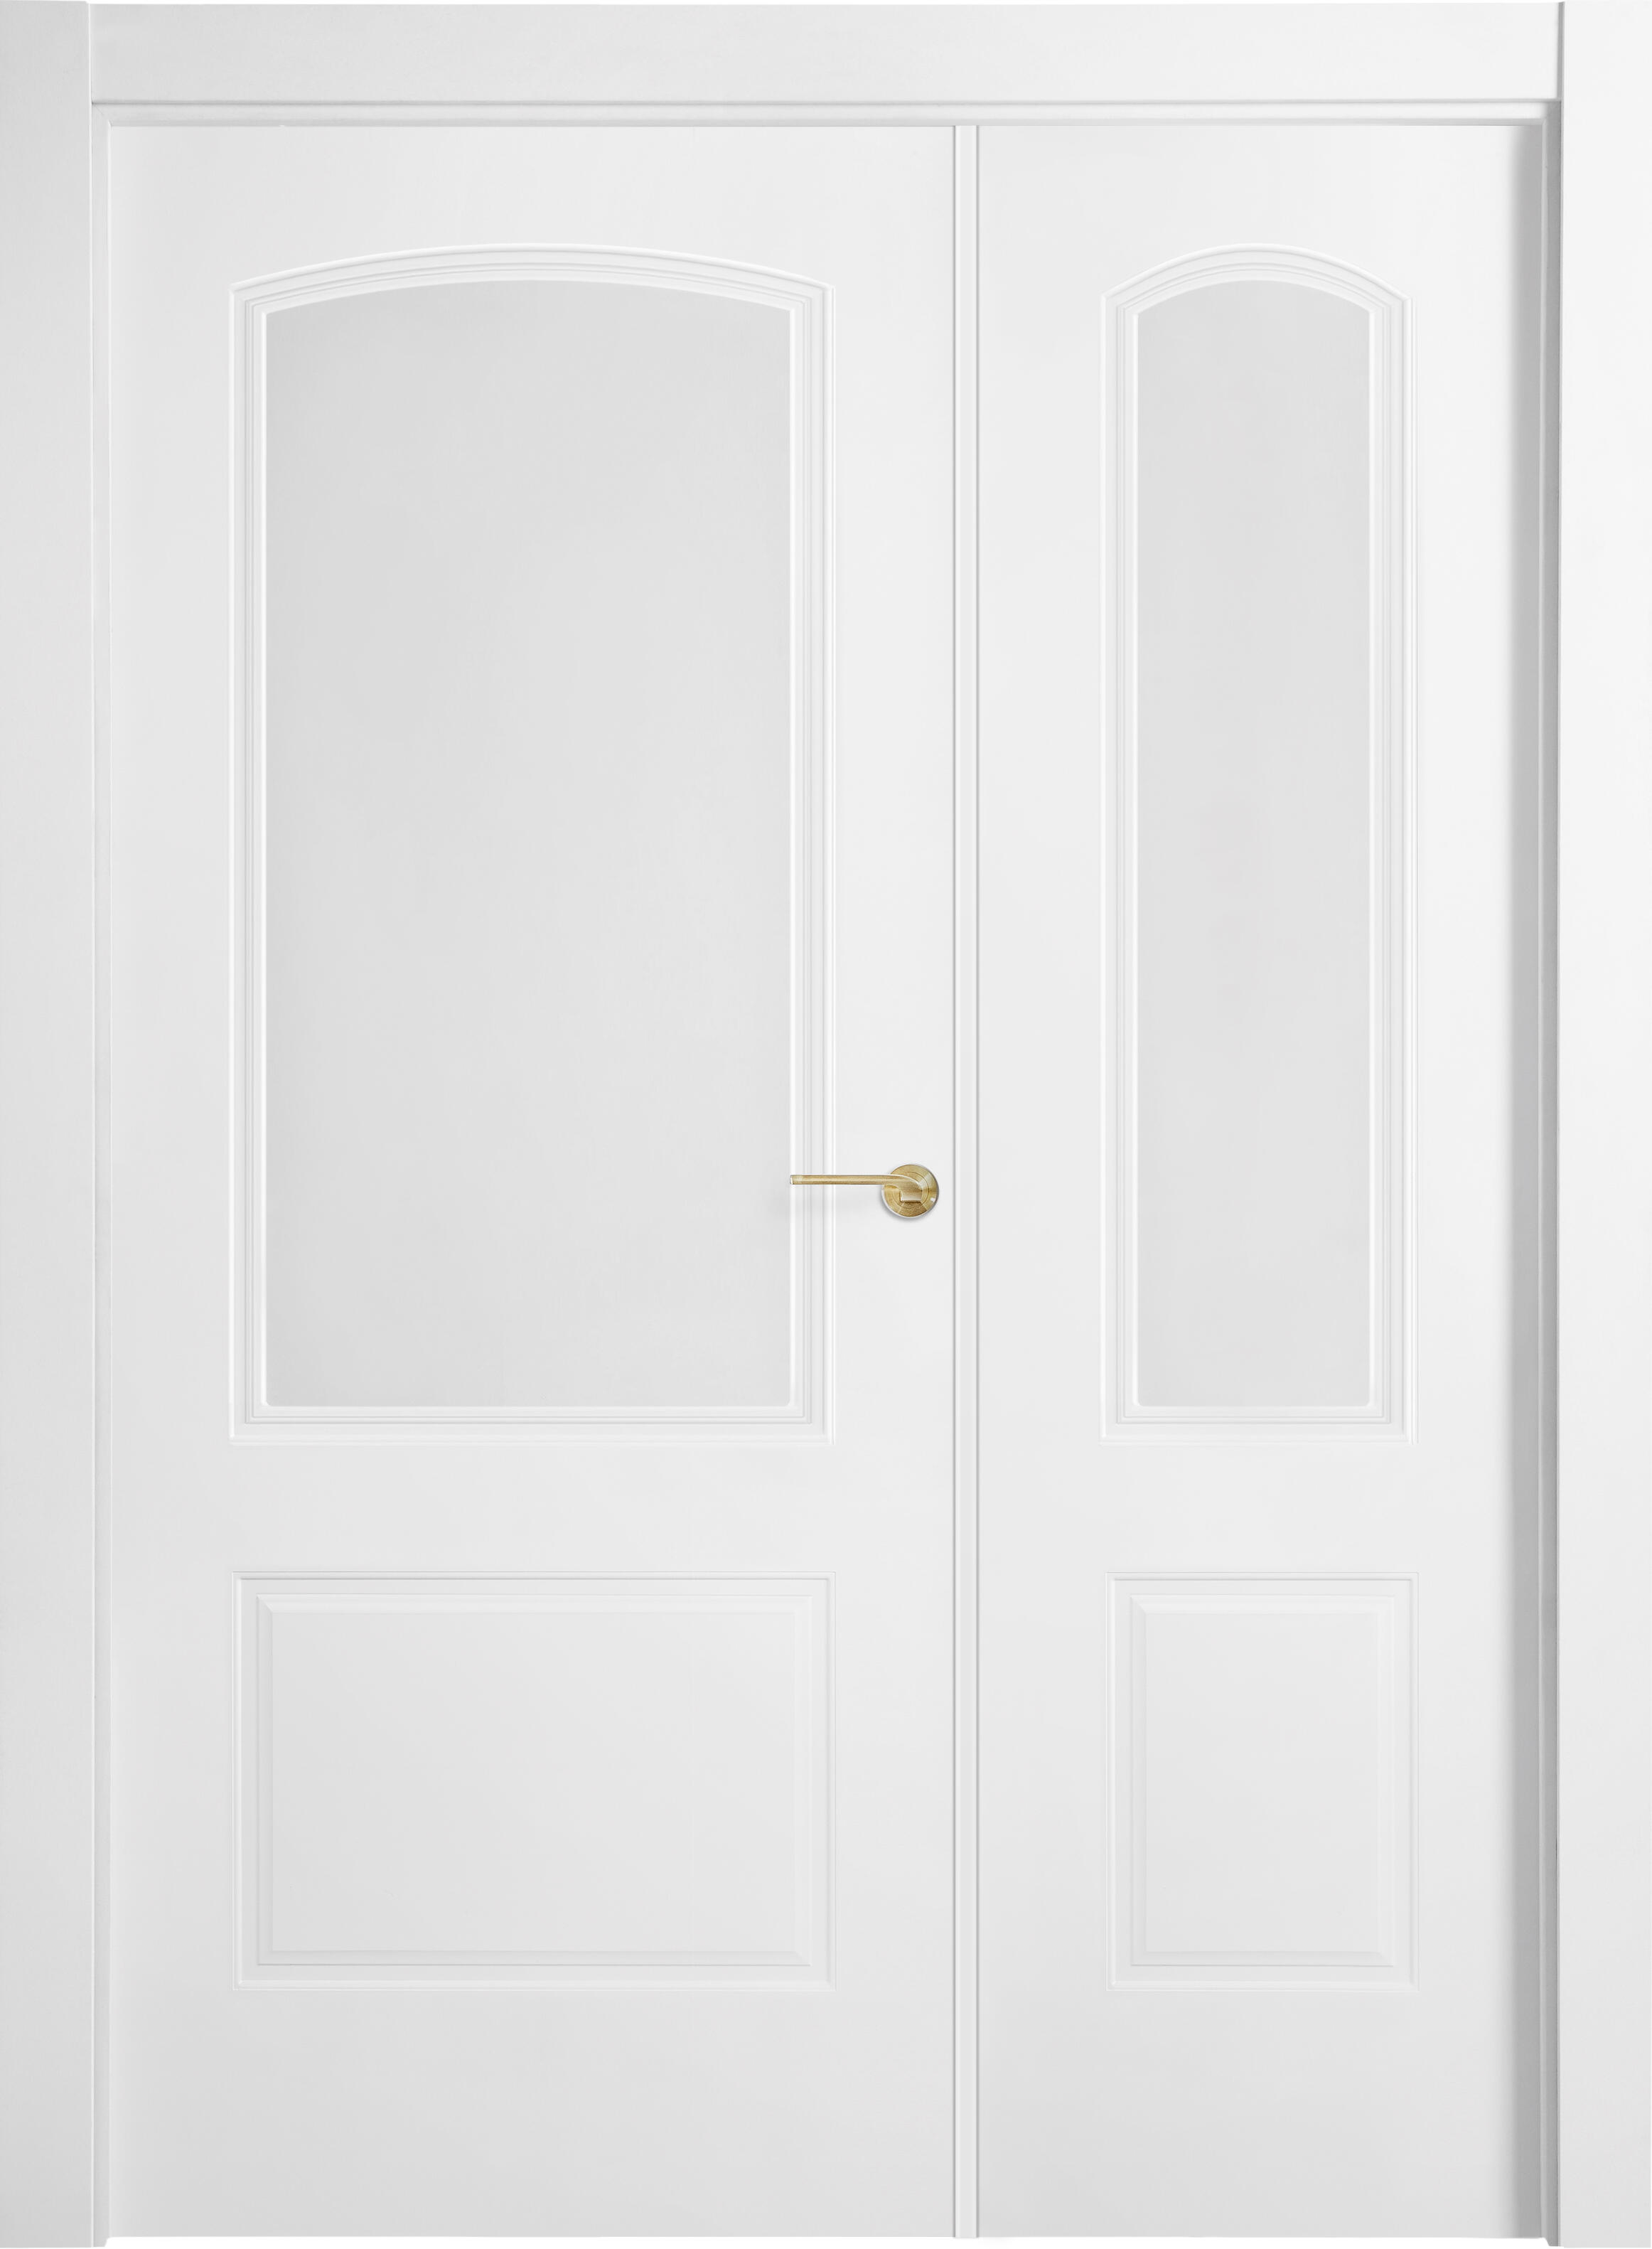 Puerta abatible berlin blanca line plus con cristal blanco izquierda de 125